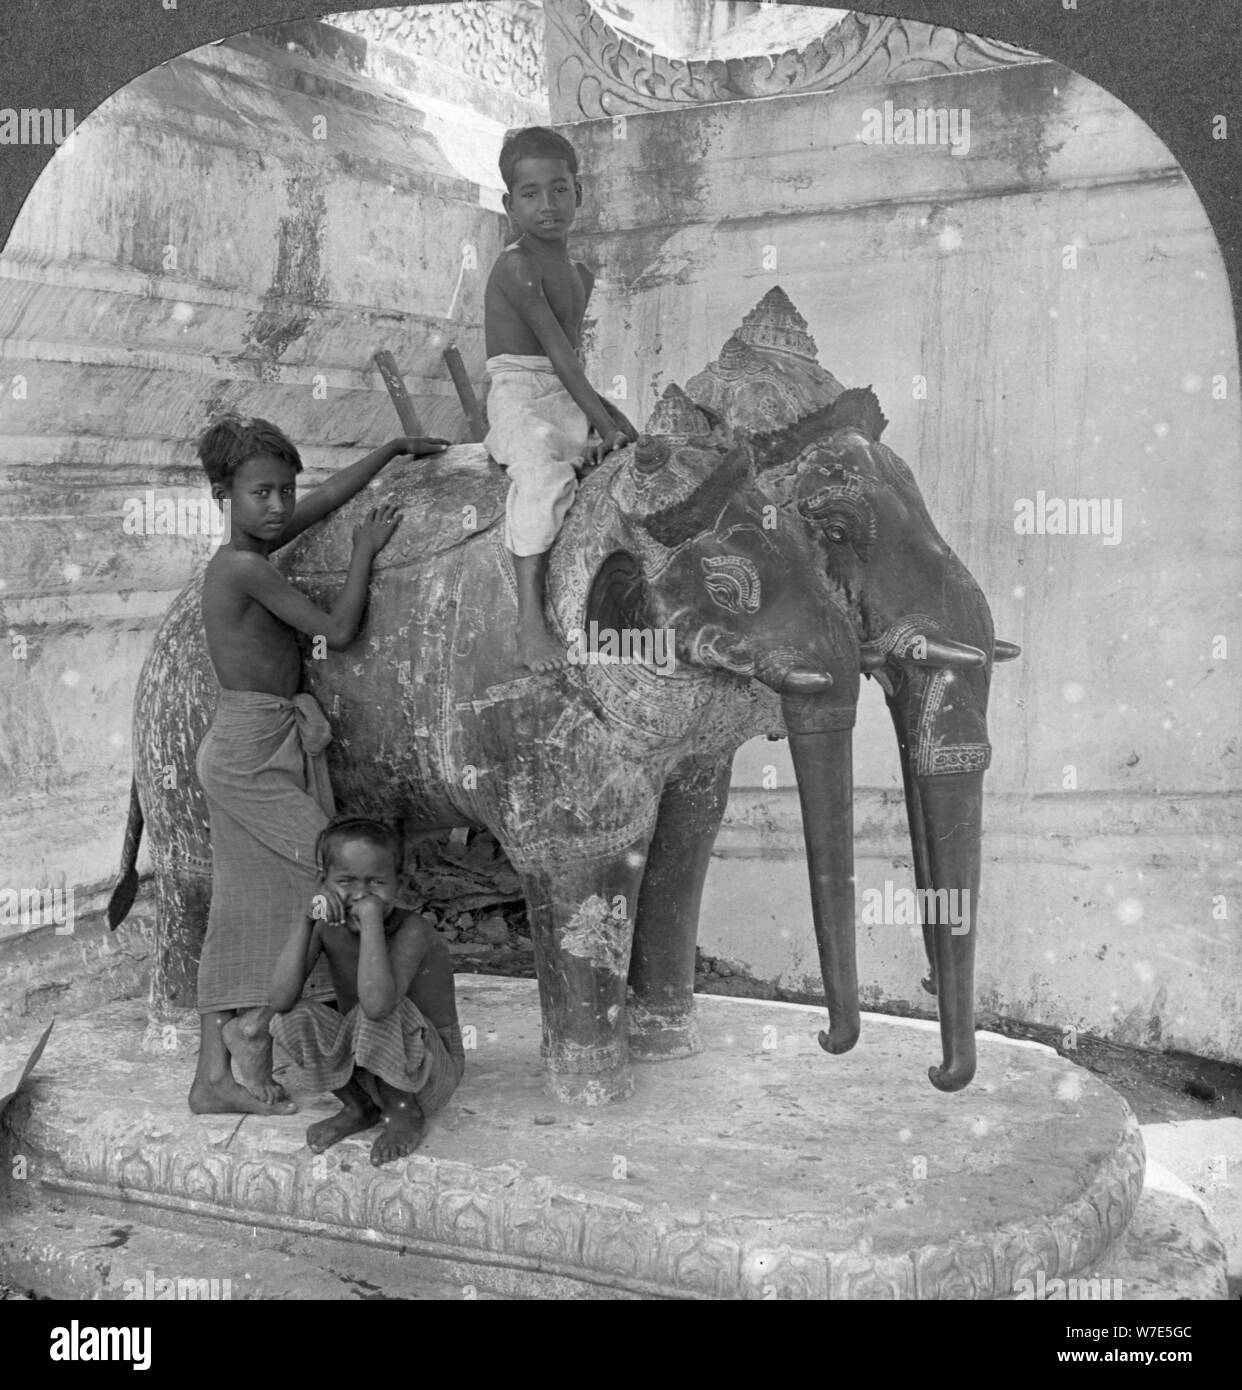 Three headed elephant guarding a sanctuary, Arakan Pagoda, Mandalay, Burma, 1908.  Artist: Stereo Travel Co Stock Photo